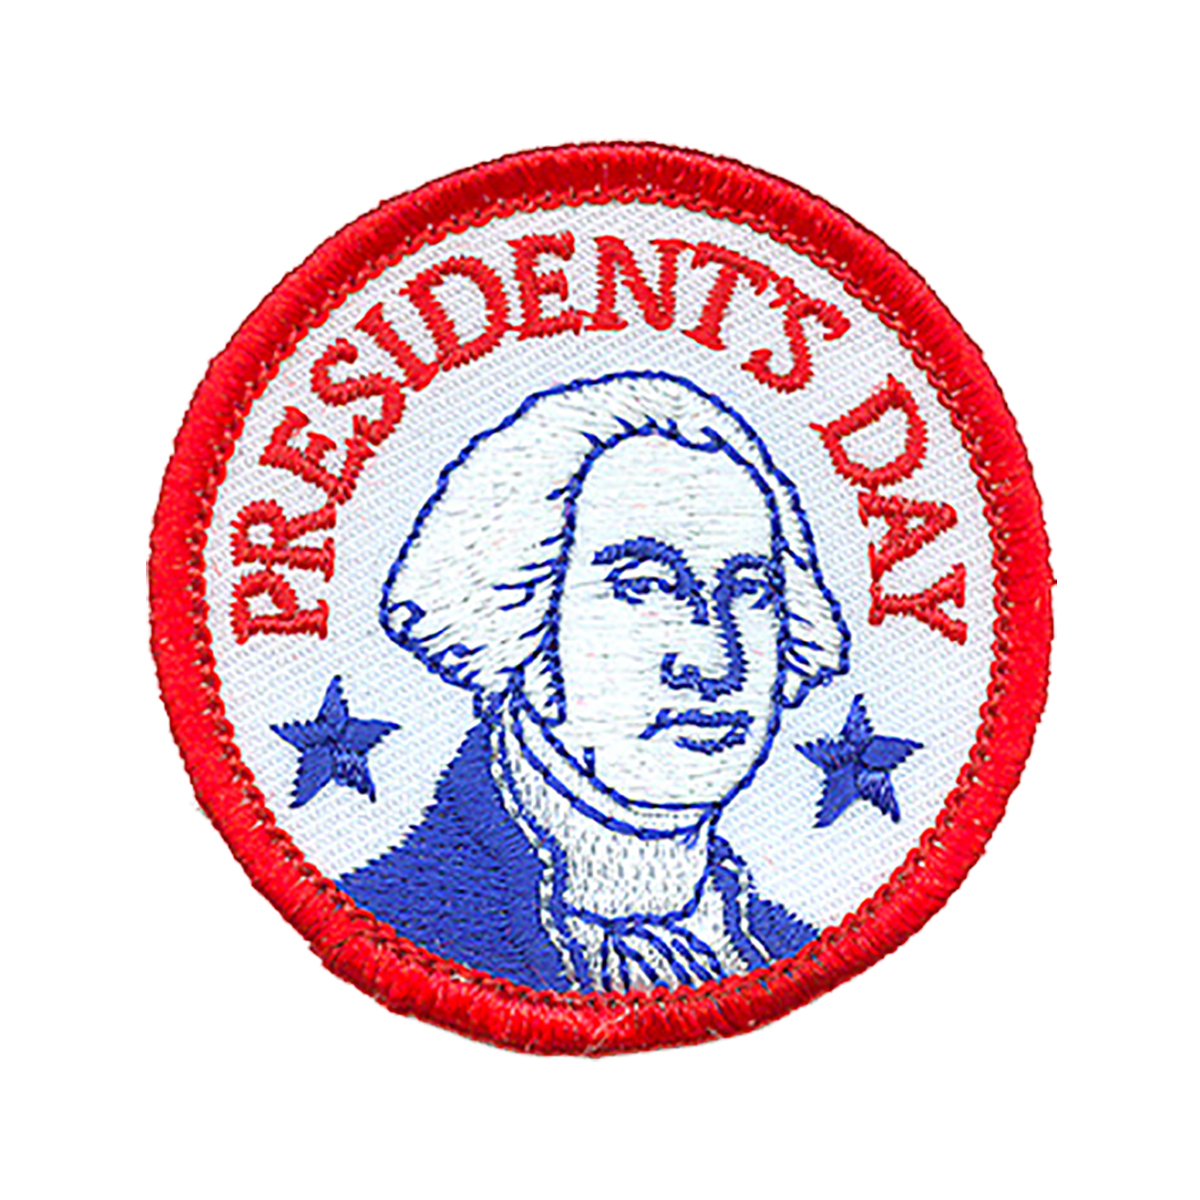 President's Day - W